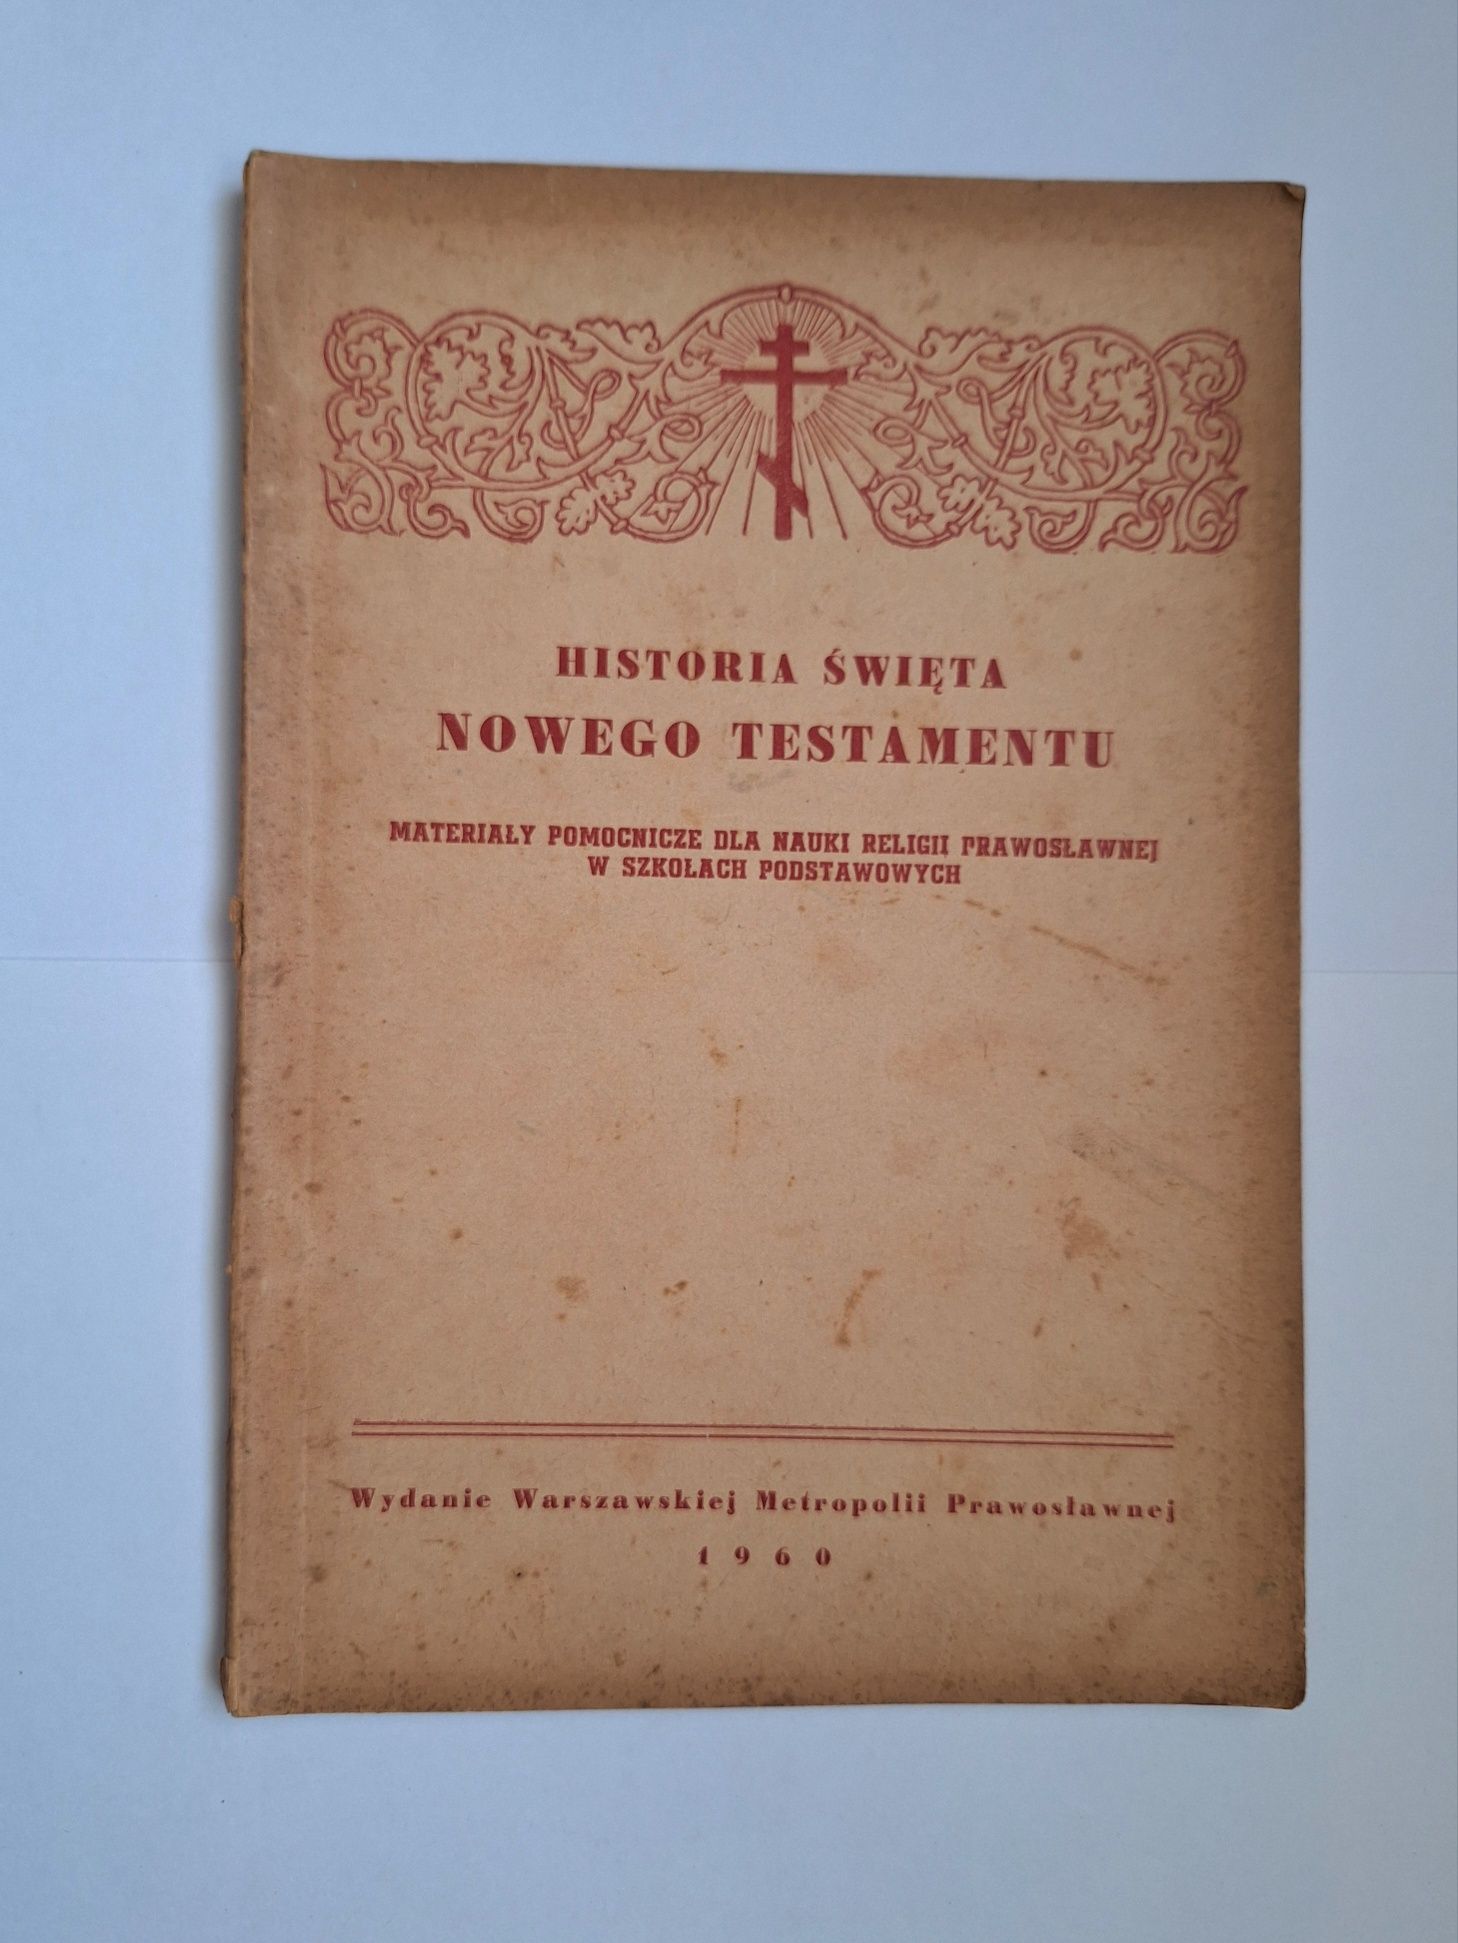 Historia święta Nowego Testamentu, Mat. pomocn. dla n. religii prawosł